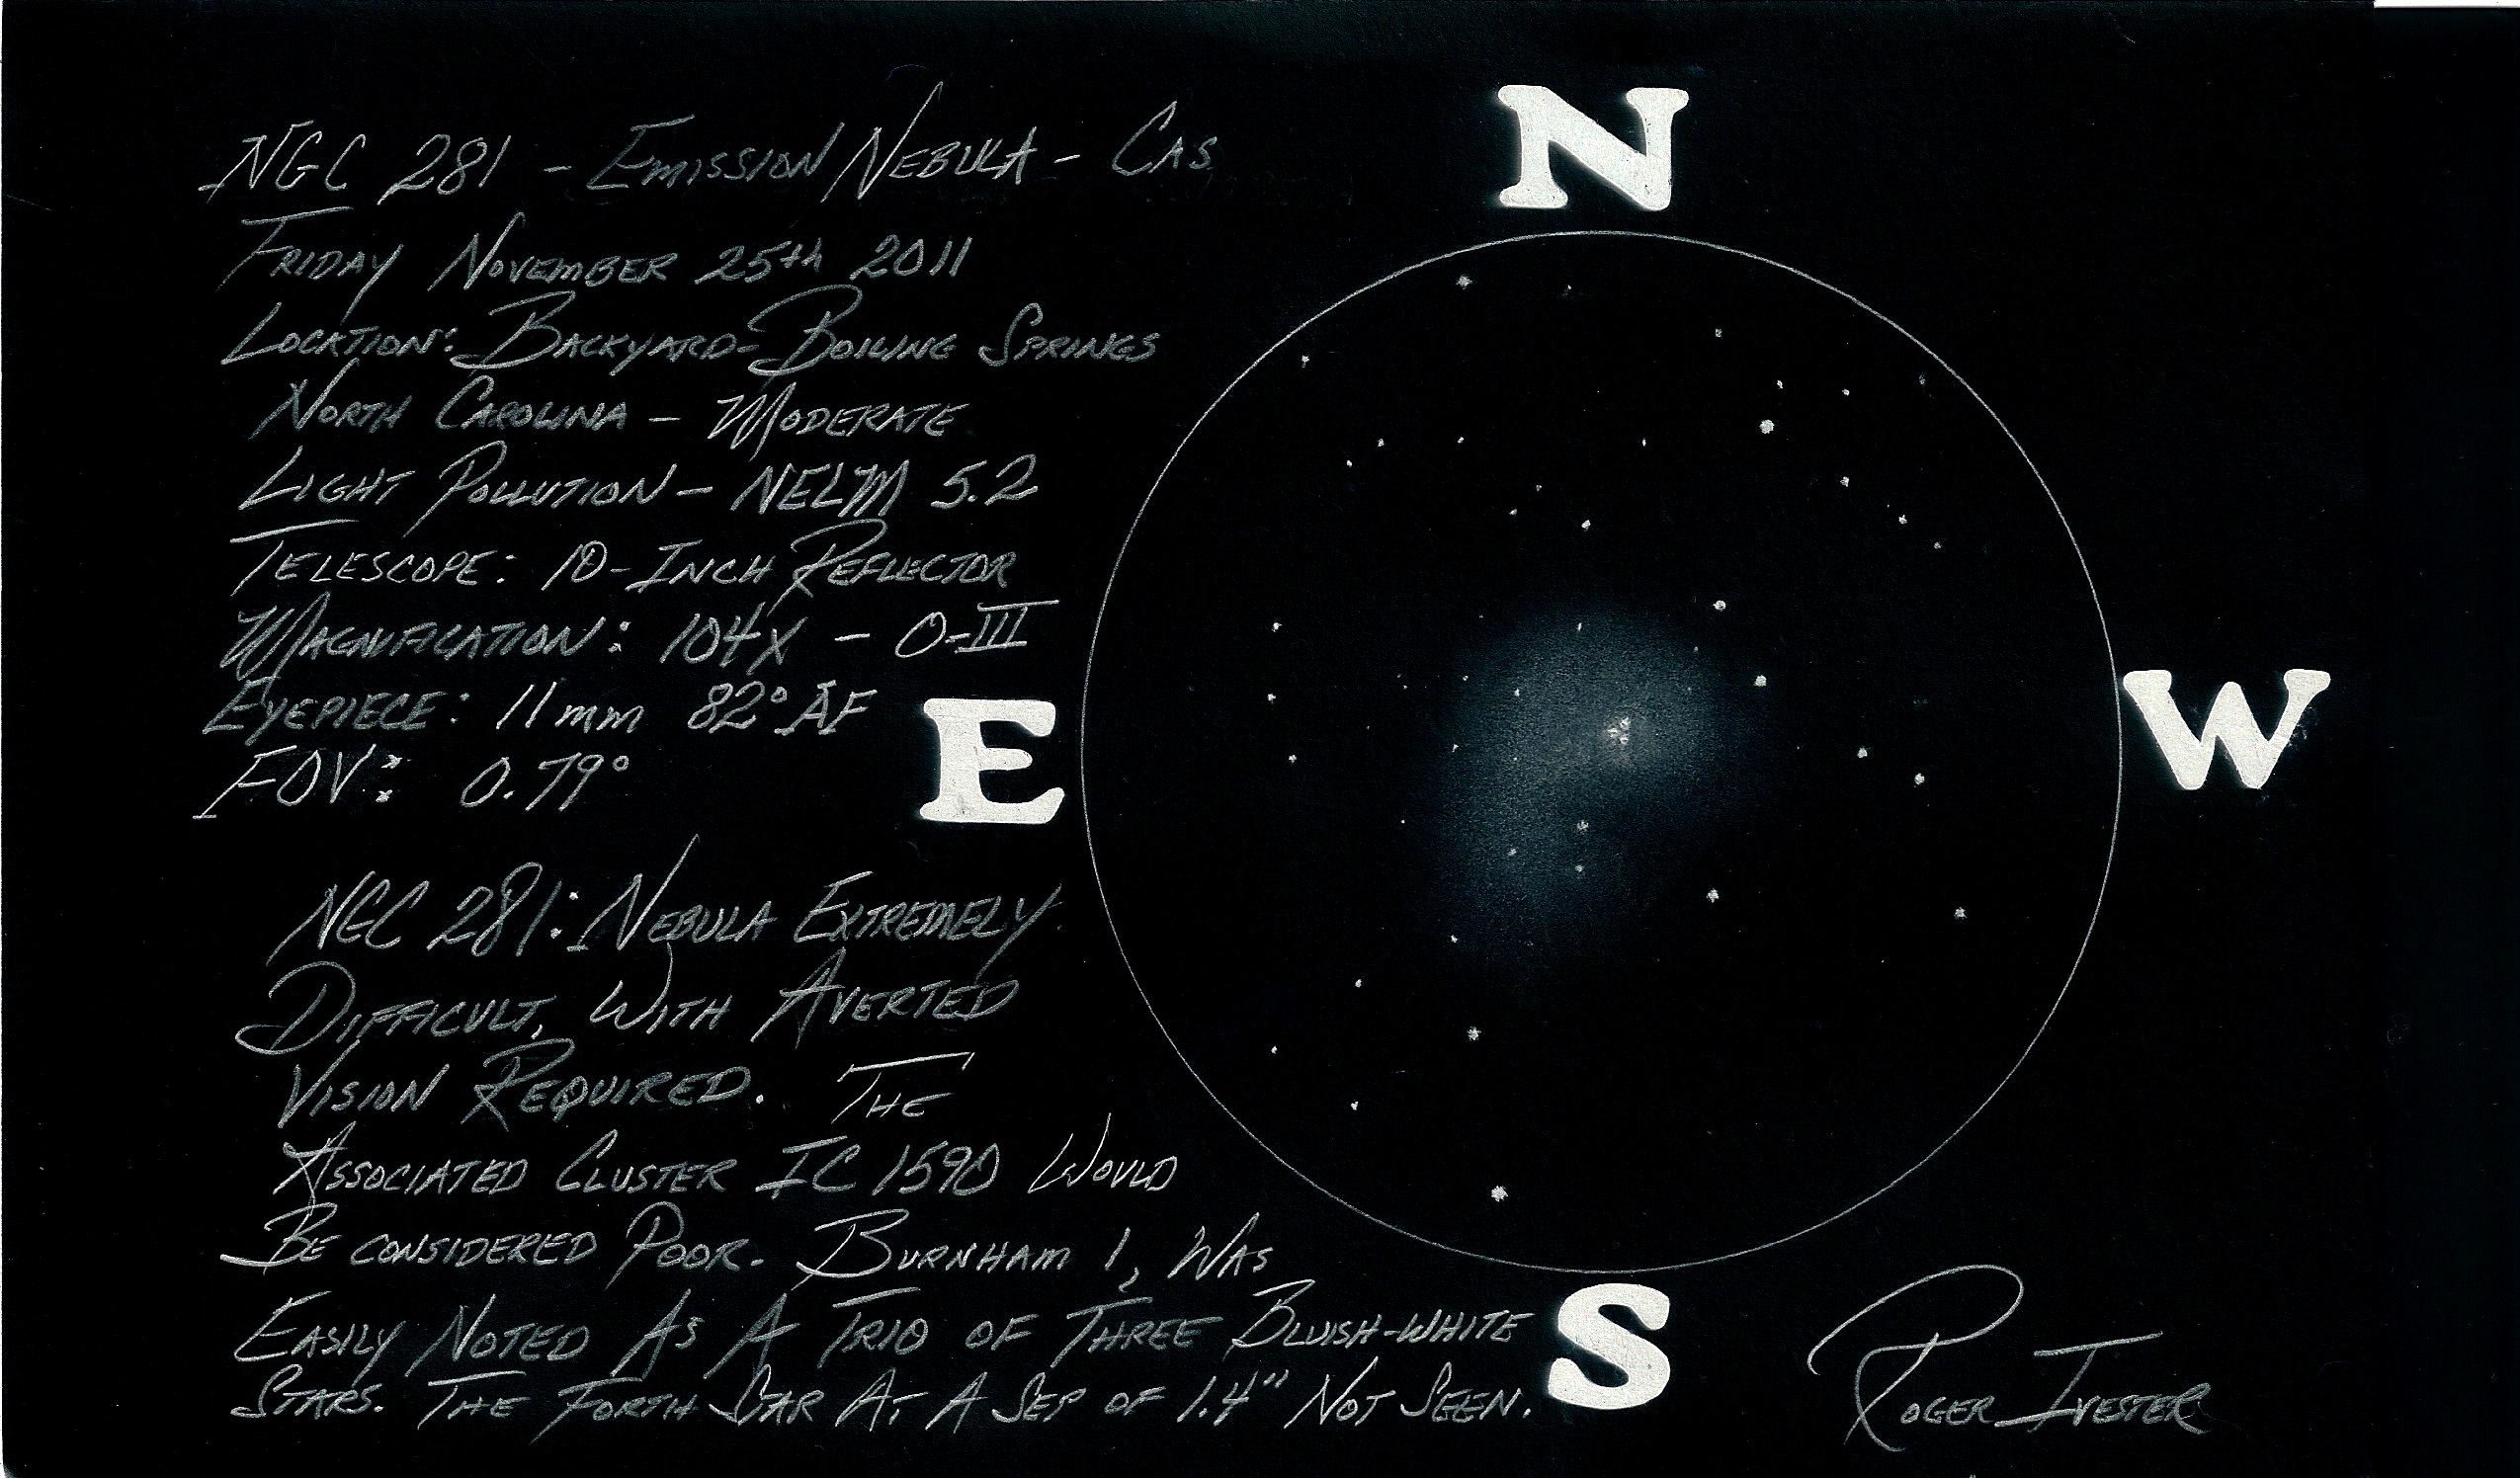 Pacman Nebula - NGC 281